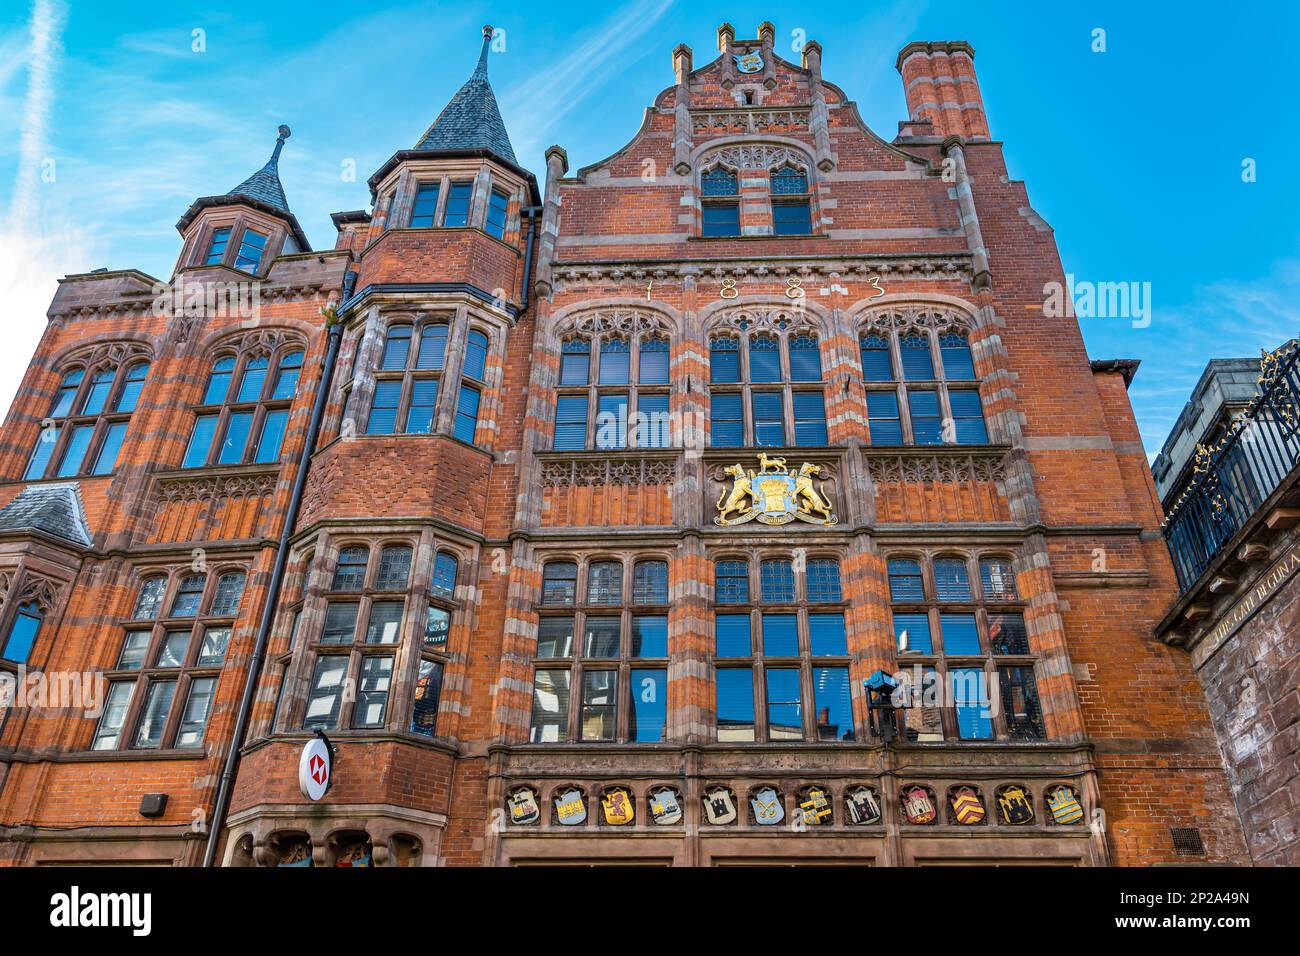 Grand bâtiment victorien historique en briques rouges, désormais HSBC Bank, Eastgate Street, Chester, Angleterre, Royaume-Uni Banque D'Images